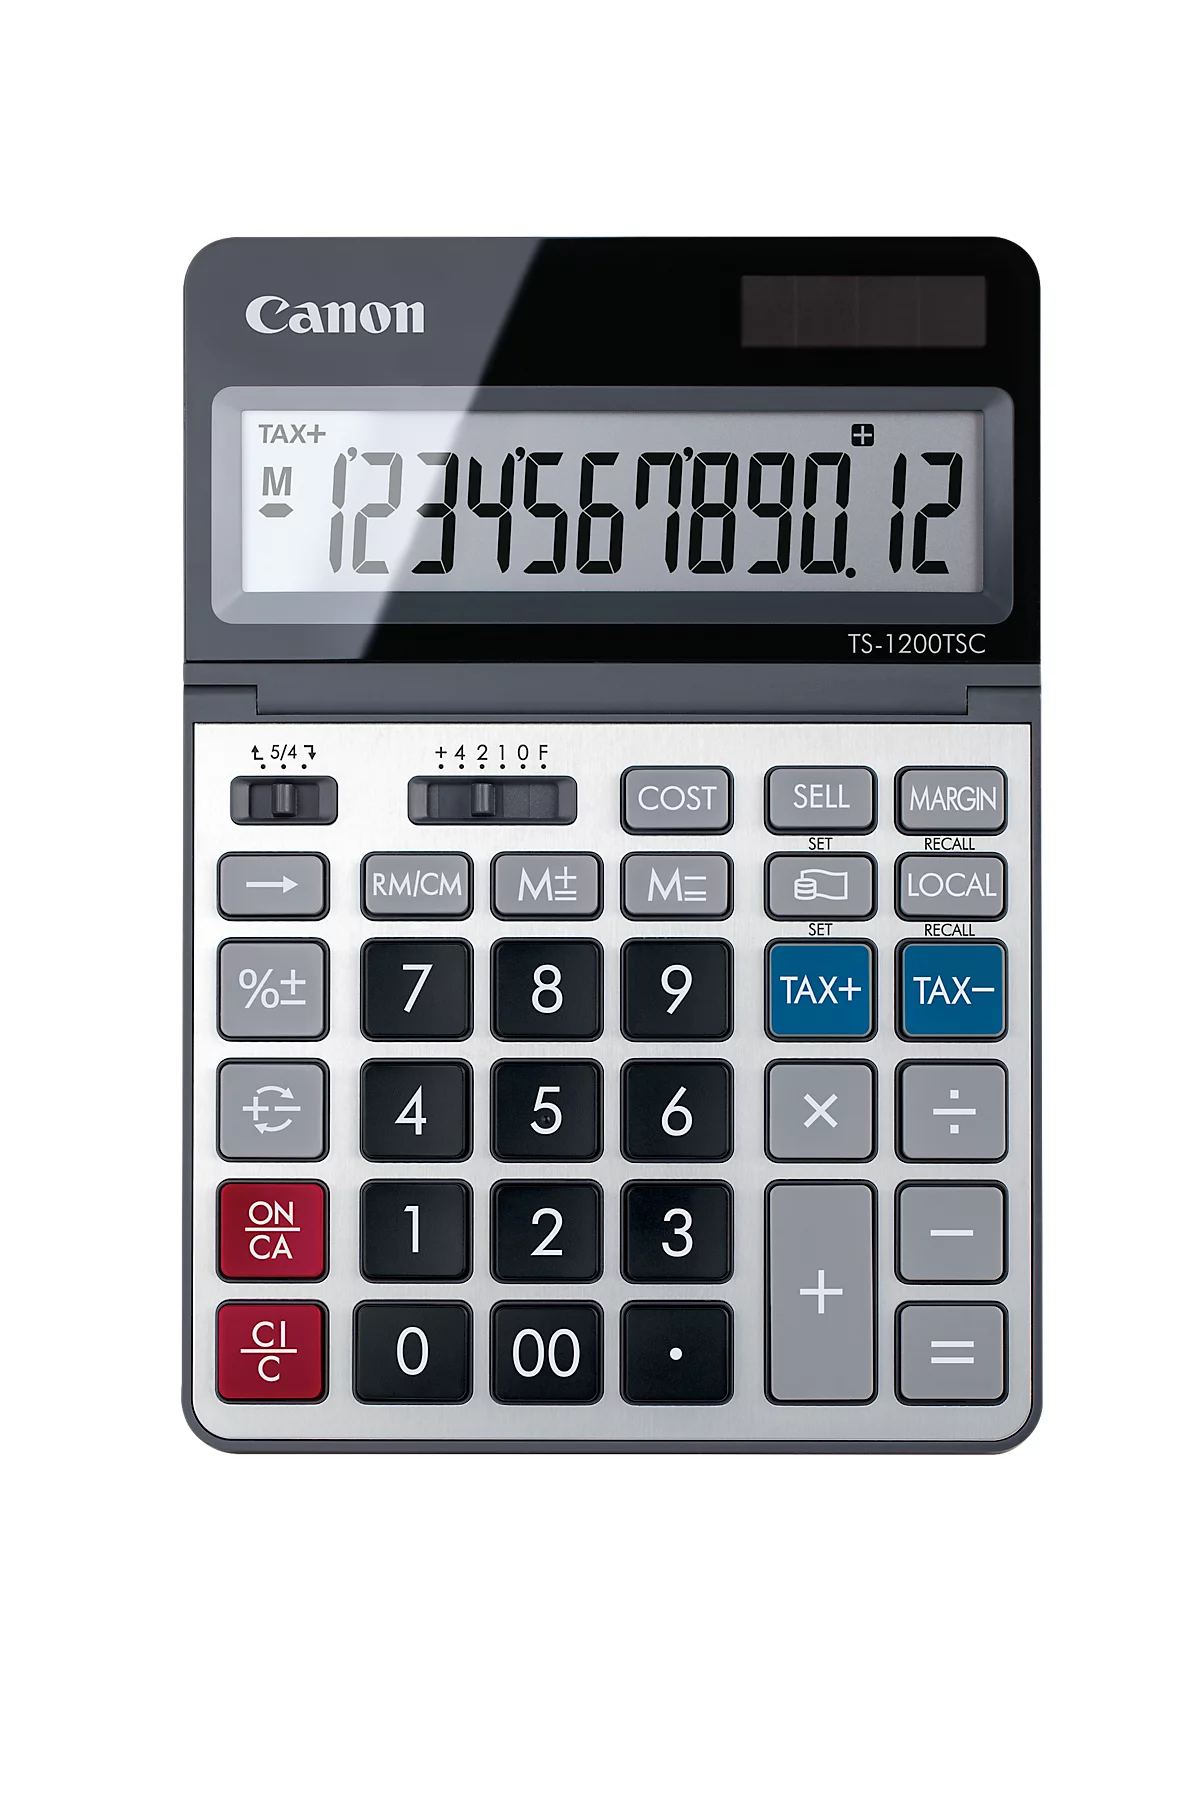 Tischrechner Canon TS-1200TSC, 12-stellige & klappbare LCD-Anzeige, mit Währungsumrechnung, Solar- & Batteriebetrieb, Kunststoff & Metall, silber